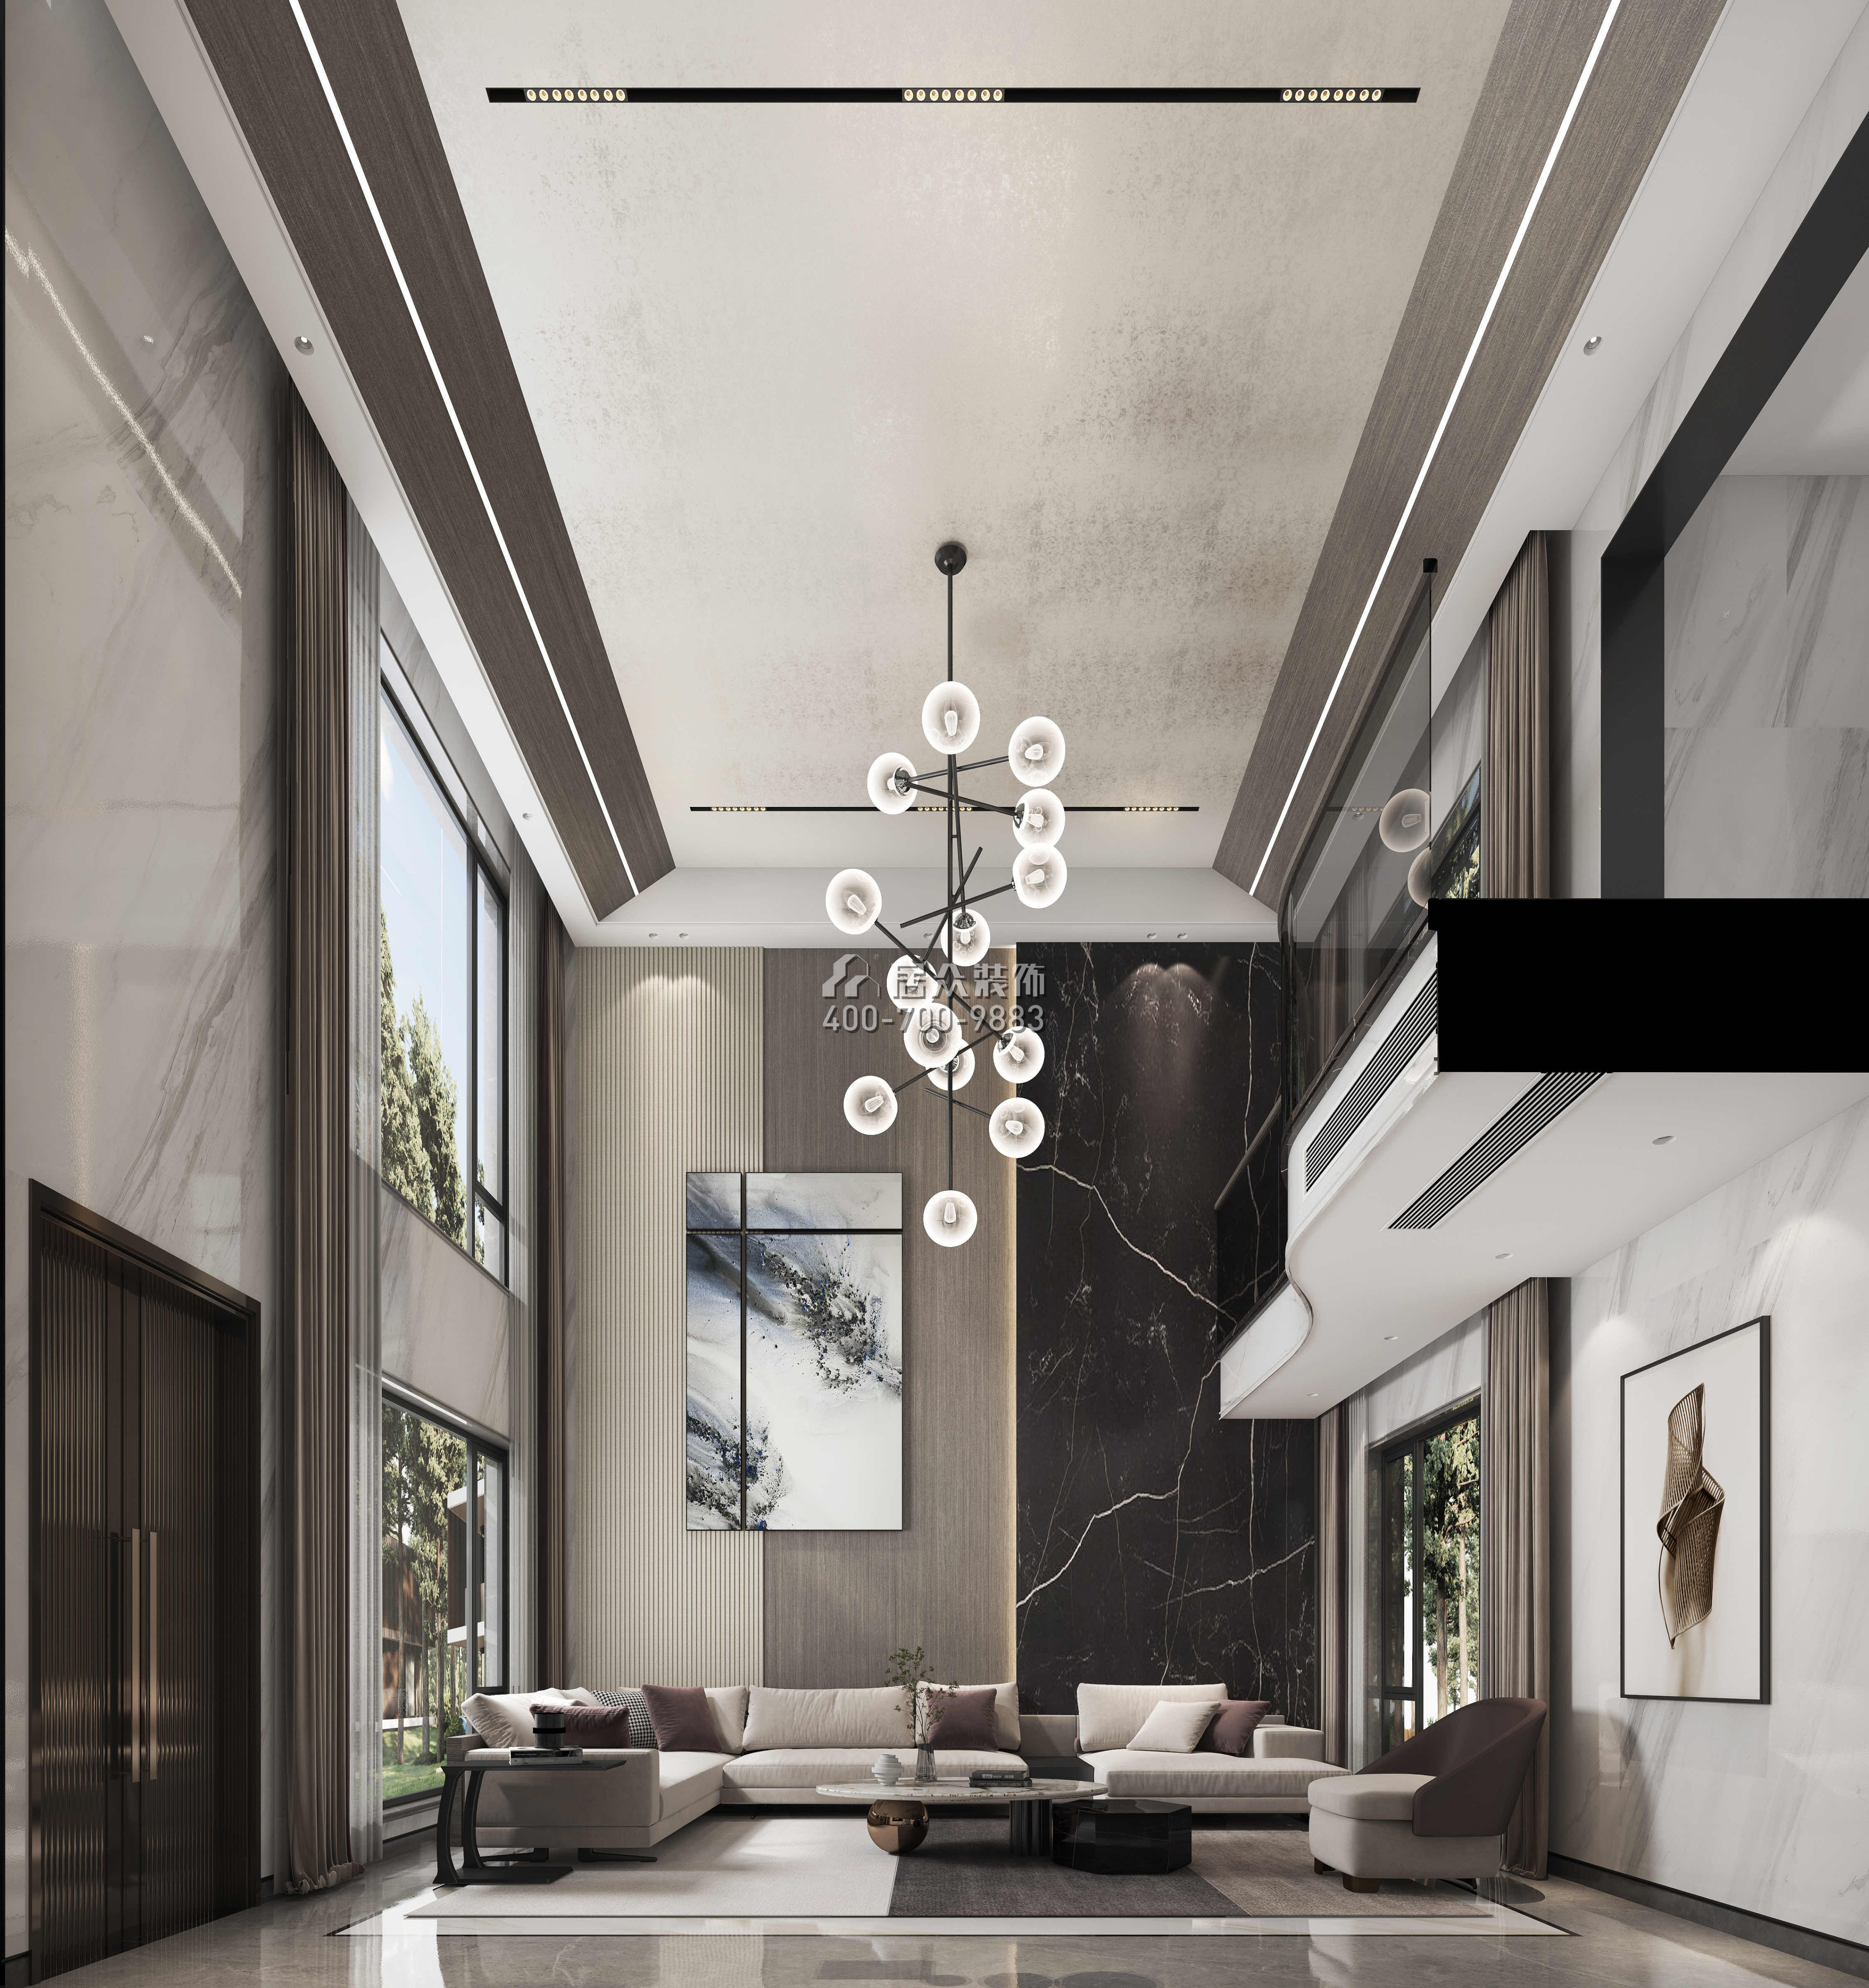 尚東紫御598平方米現代簡約風格別墅戶型客廳裝修效果圖